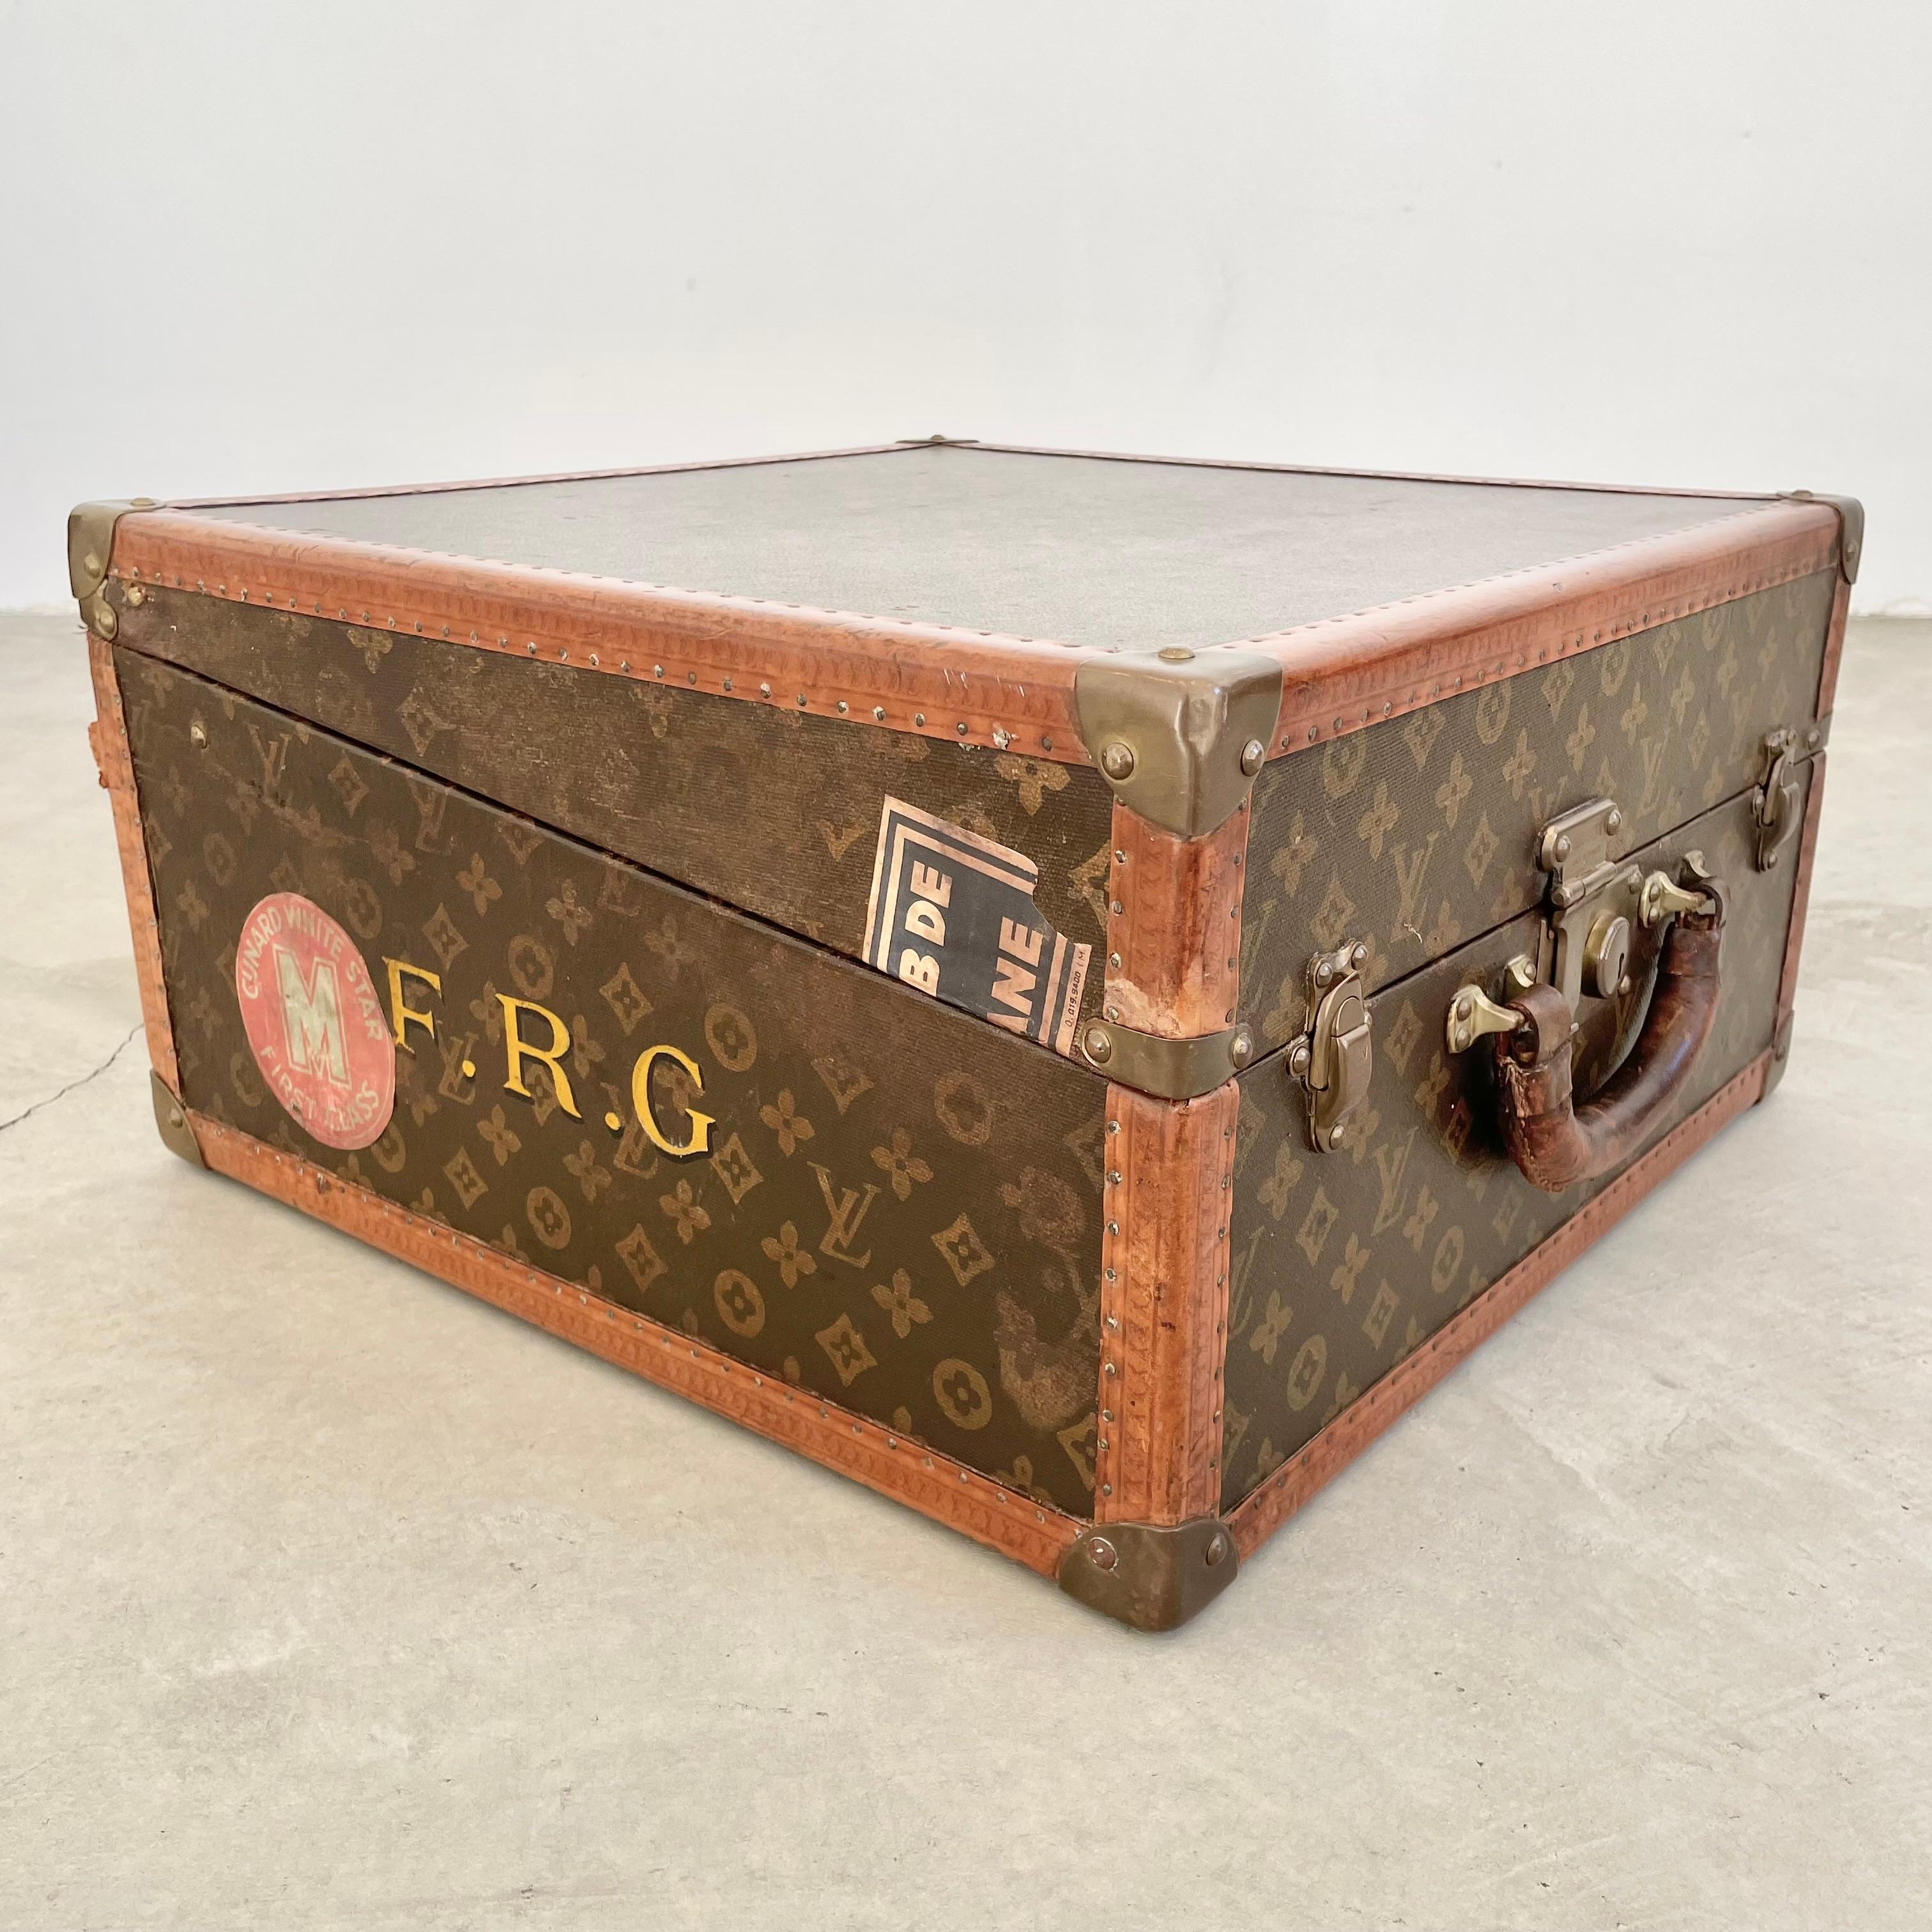 Individuell gestalteter Vintage-Koffer von Louis Vuitton aus den 1940er Jahren. Wunderschönes Ausstellungsstück mit unregelmäßiger Form/Öffnung. Ideal für die Aufbewahrung von Papieren, Büchern oder kleinen Gegenständen für Reisen oder im Haus. Das